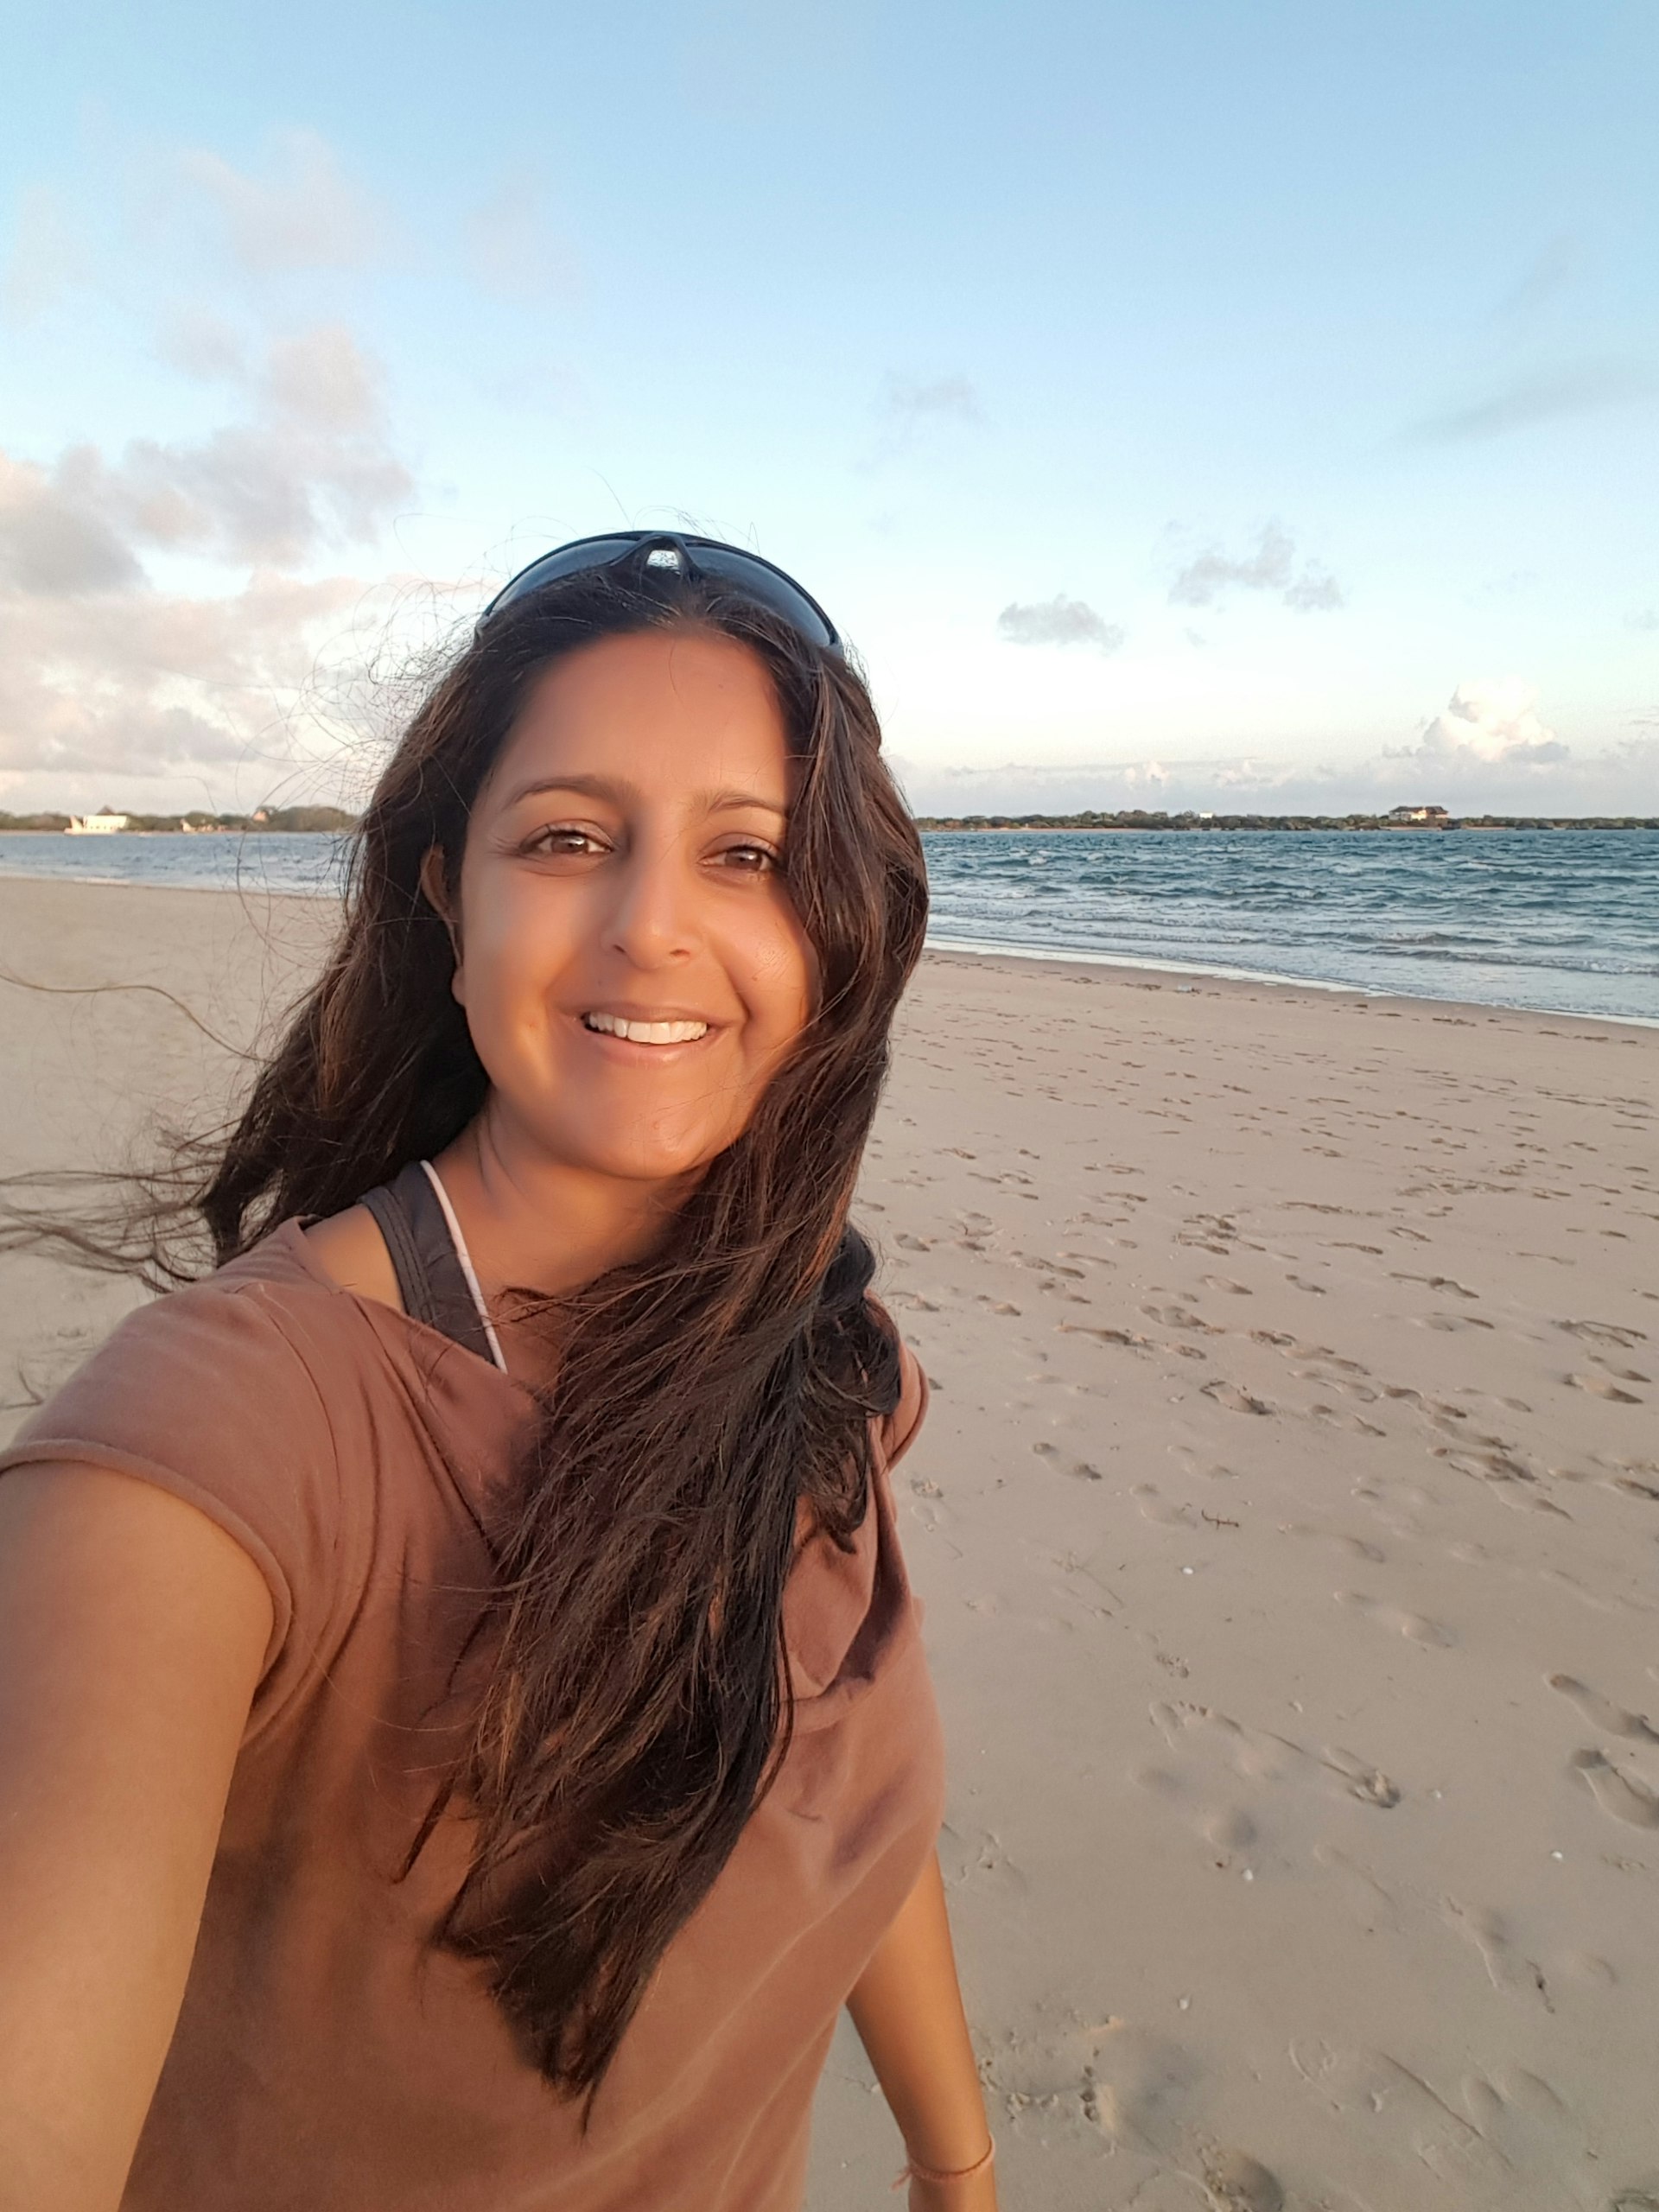 An selfie of an Asian woman on a beach